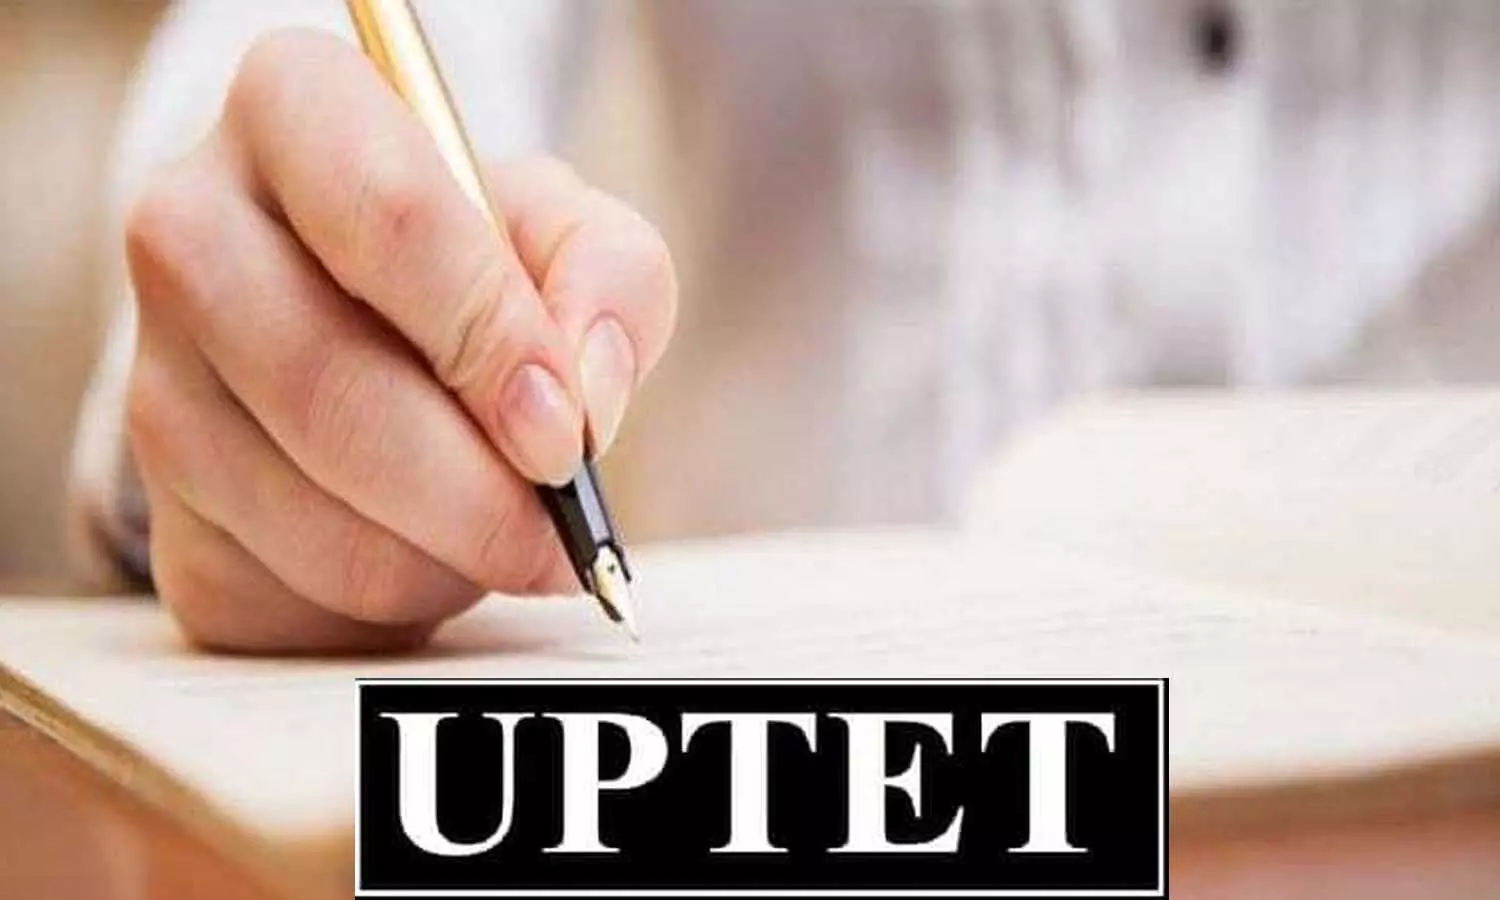 UP TET Exam 2021: UPTET की परीक्षा स्थगित, यहां जानें सभी डिटेल्स